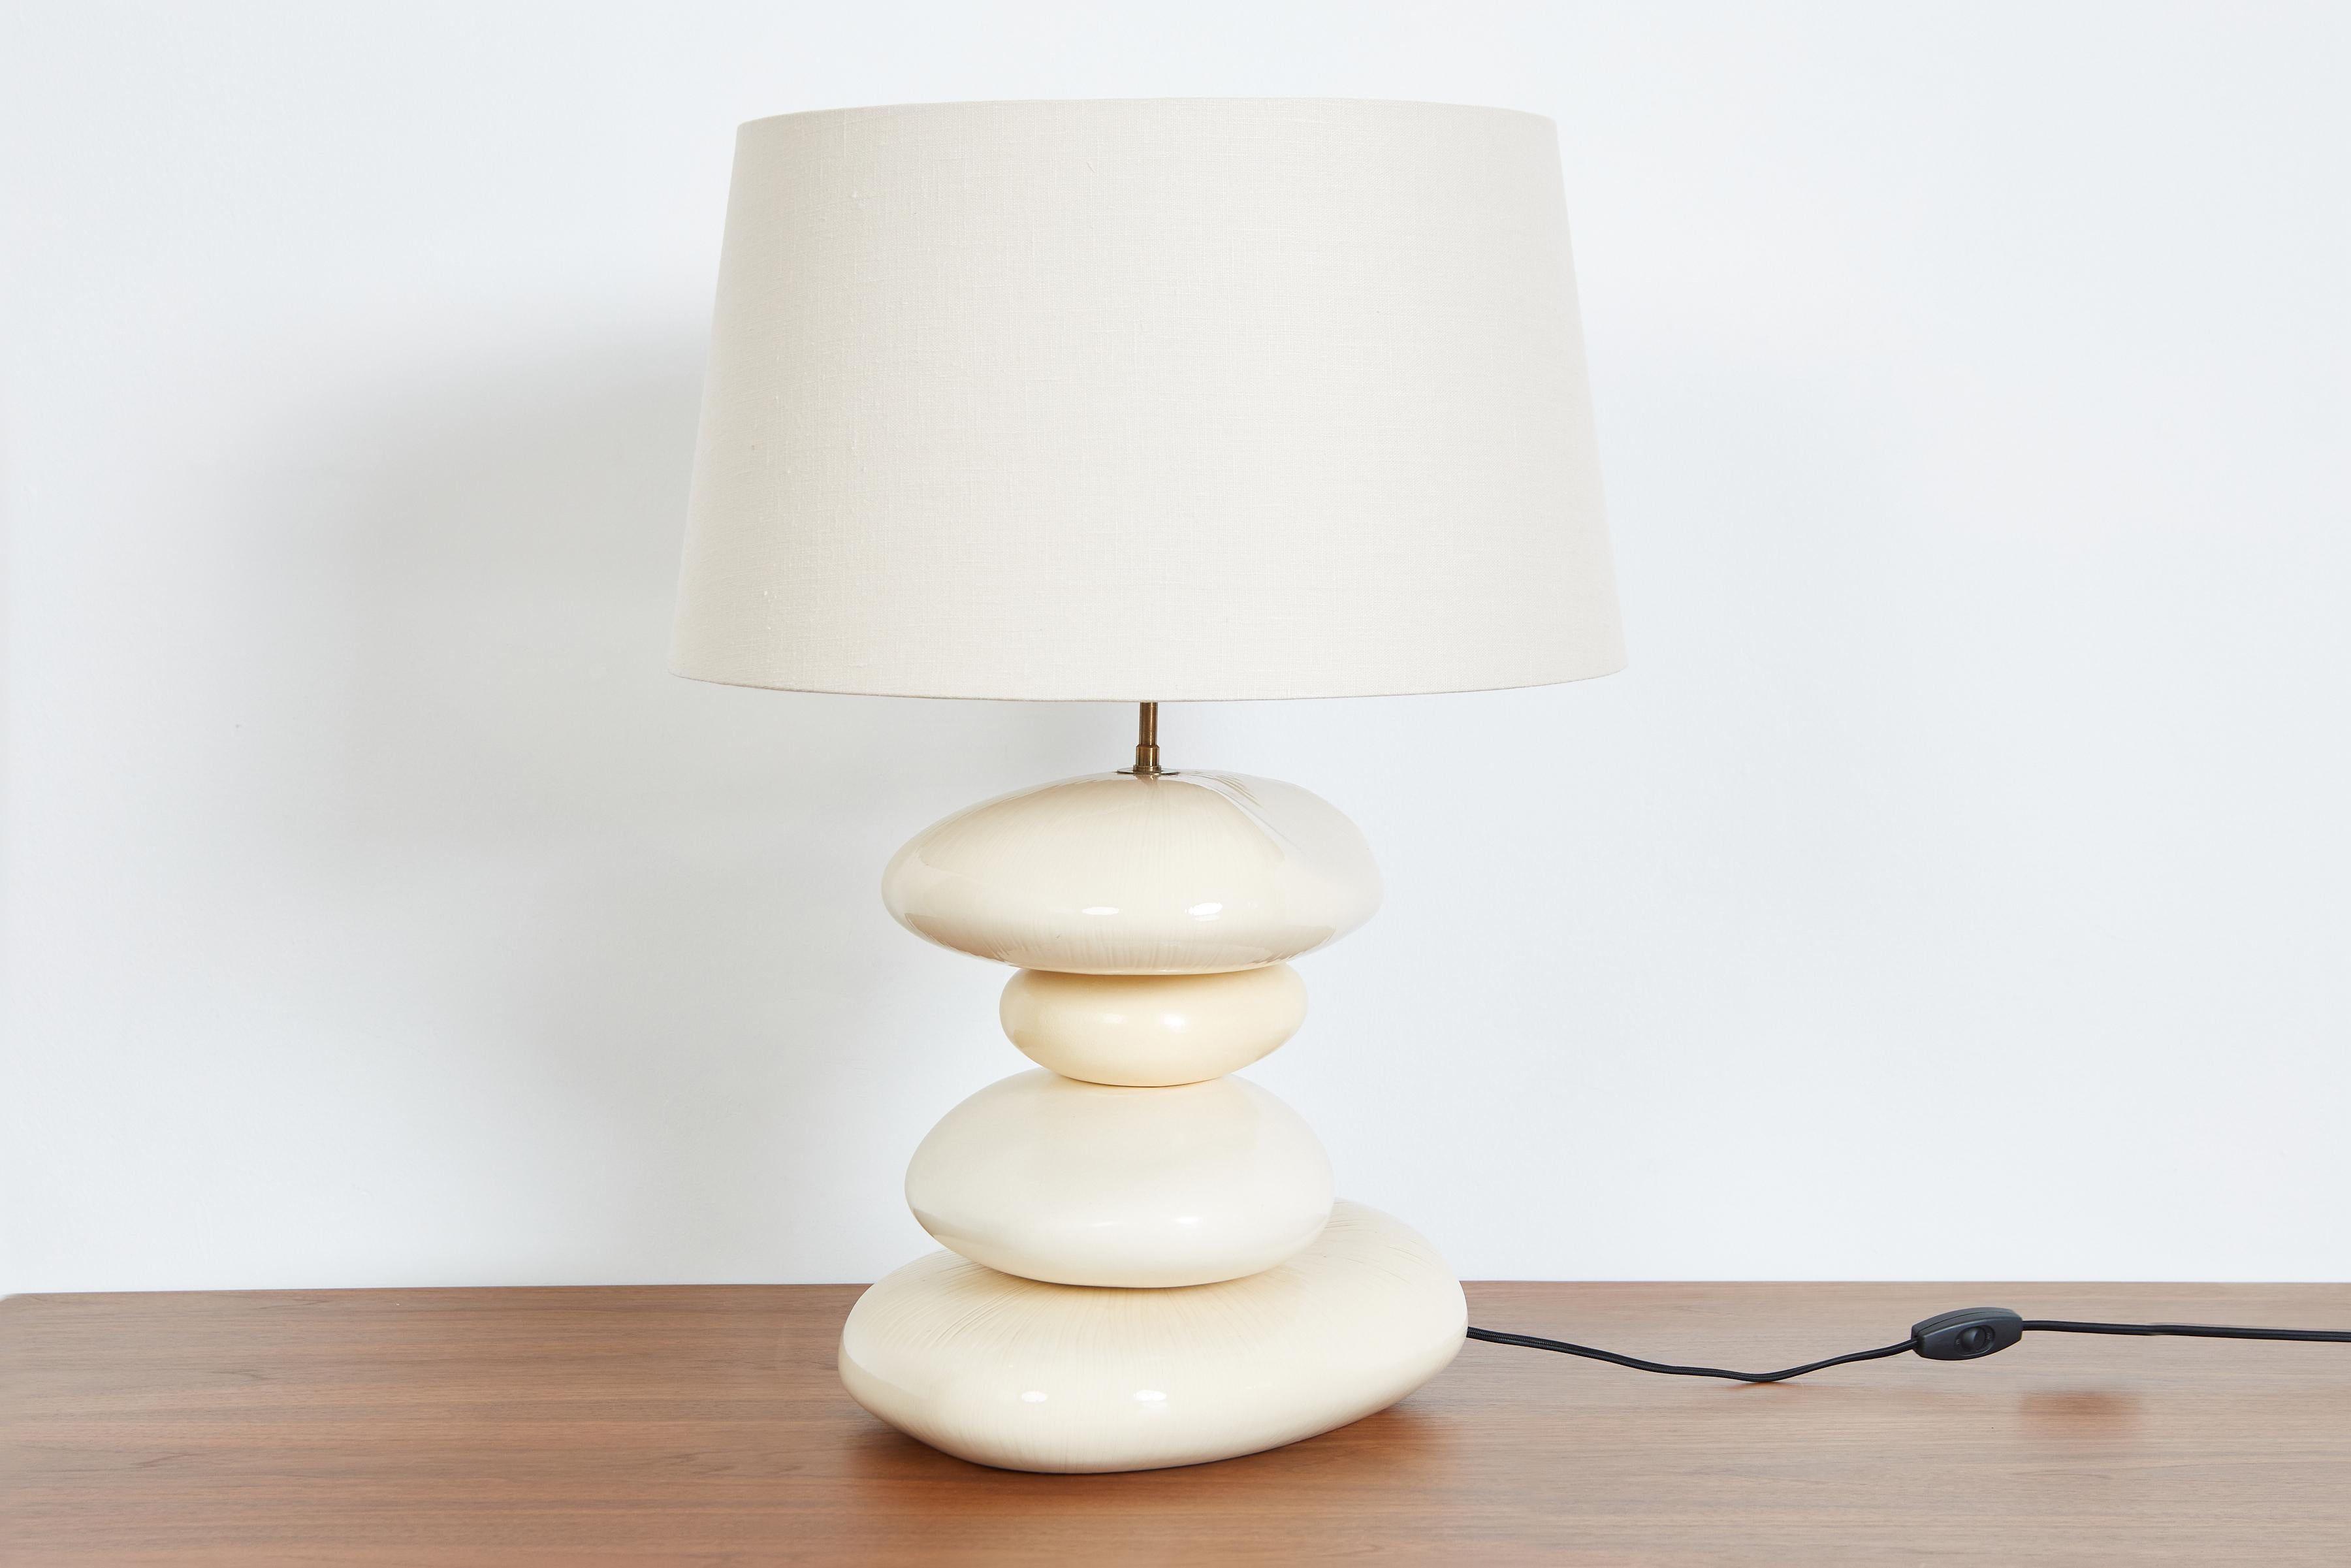 Incroyable lampe de table en céramique française des années 1960 avec des formes organiques variées dans des tons de crème et de blanc. 
Nouveau câblage avec abat-jour en lin